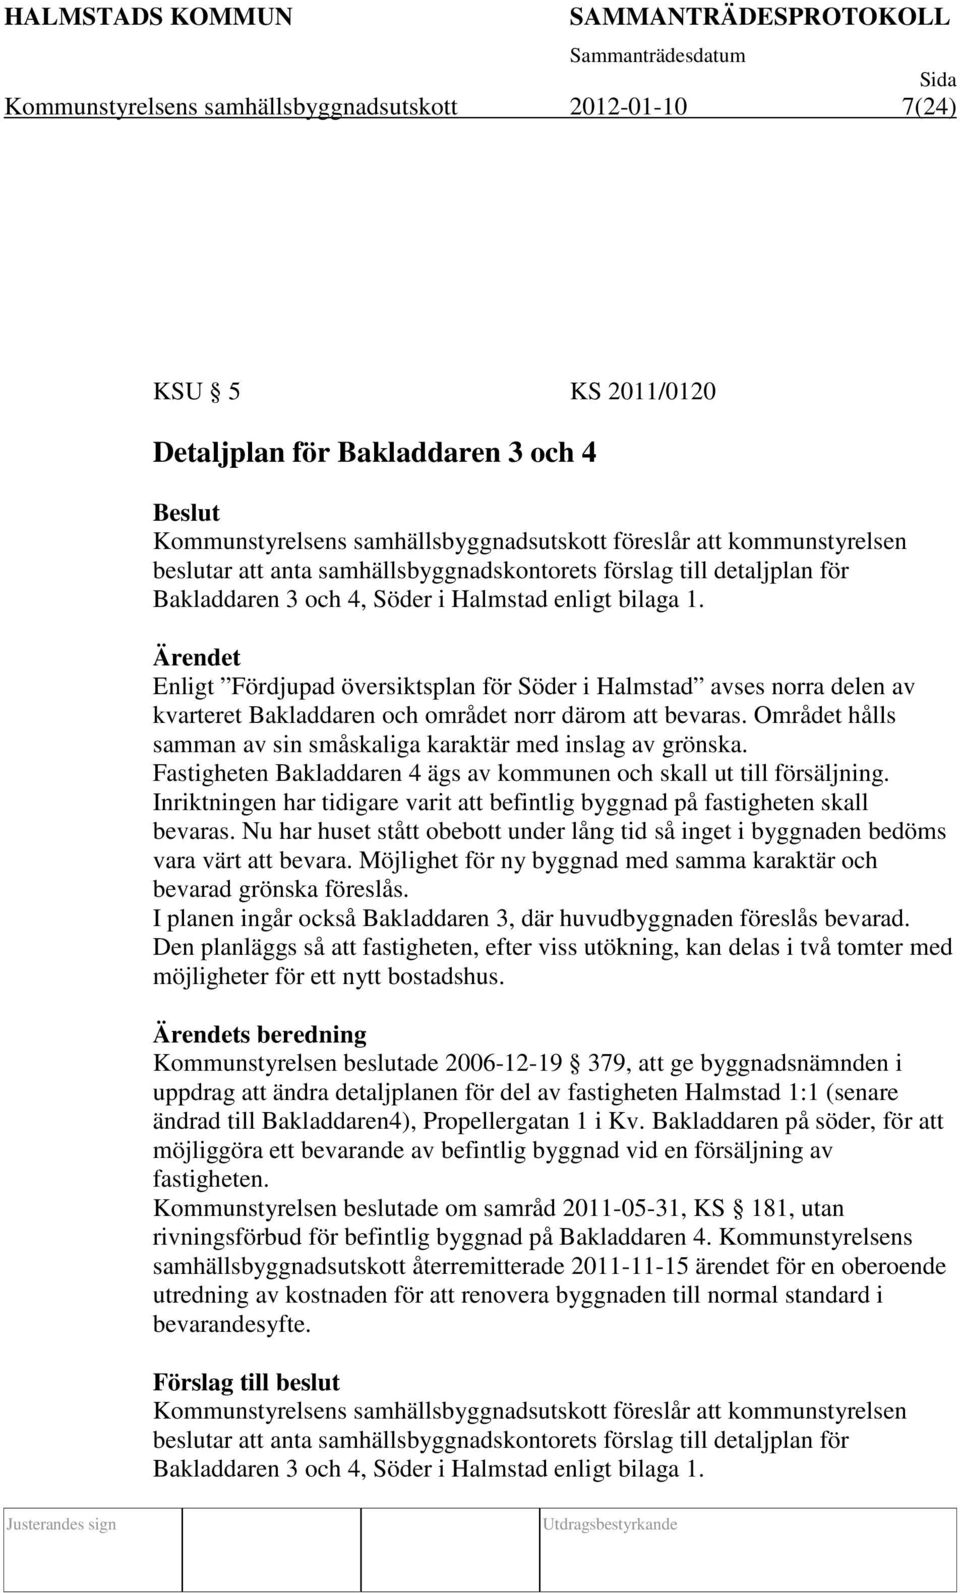 Enligt Fördjupad översiktsplan för Söder i Halmstad avses norra delen av kvarteret Bakladdaren och området norr därom att bevaras.